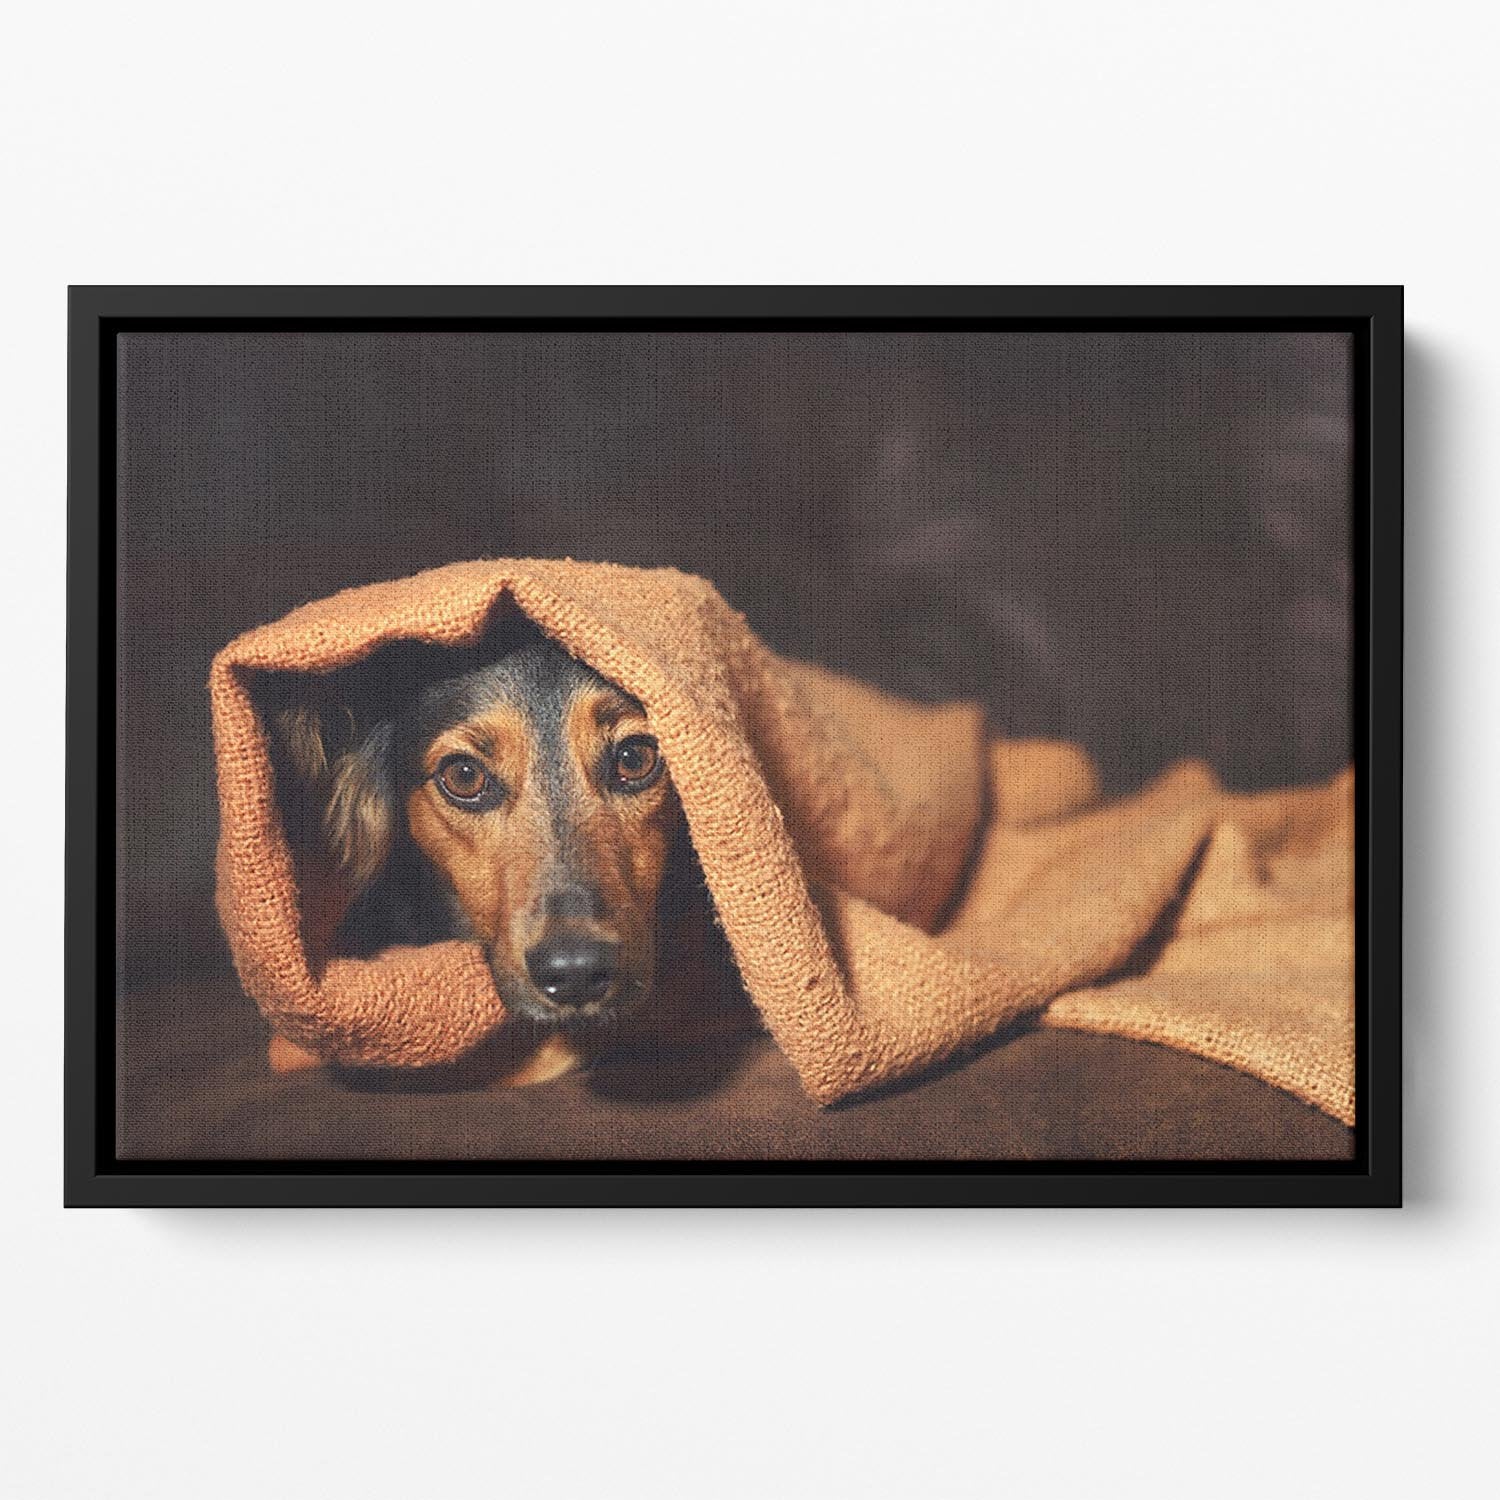 Small black and brown dog hiding under orange blanket Floating Framed Canvas - Canvas Art Rocks - 2